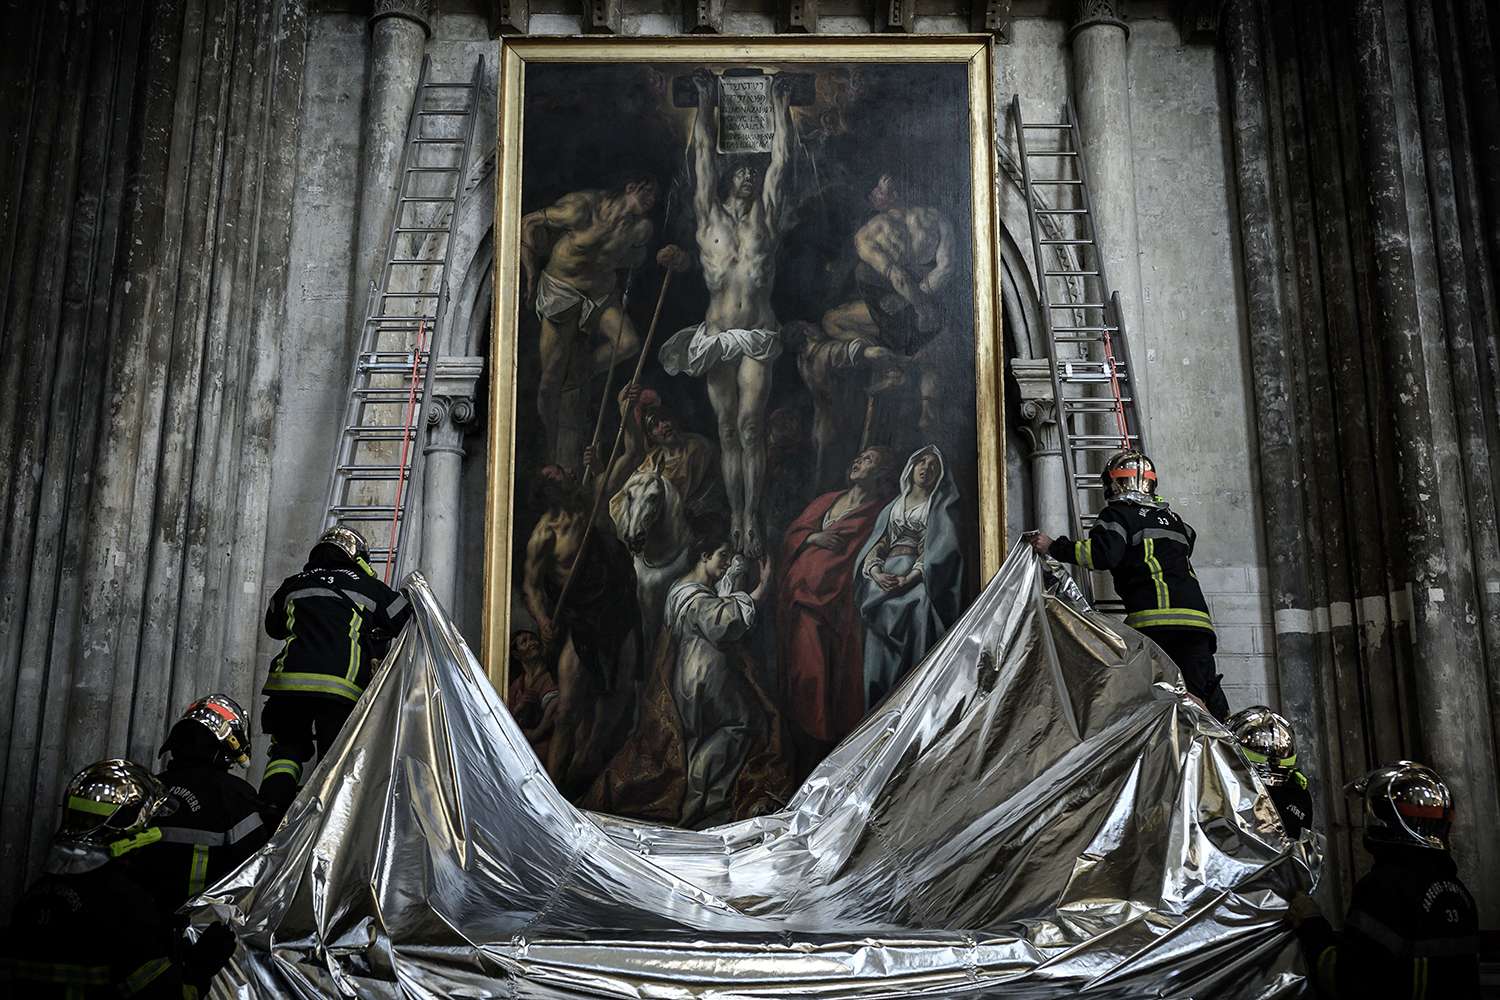 Lính cứu hỏa Pháp bảo vệ một bức tranh bằng chăn chống cháy trong cuộc diễn tập nhằm bảo quản các tác phẩm nghệ thuật trong nhà thờ Saint-Andre ở Bordeaux, Tây Nam Pháp, hôm 12/10/2021. Ảnh: PHILIPPE LOPEZ/AFP VIA GETTY IMAGES